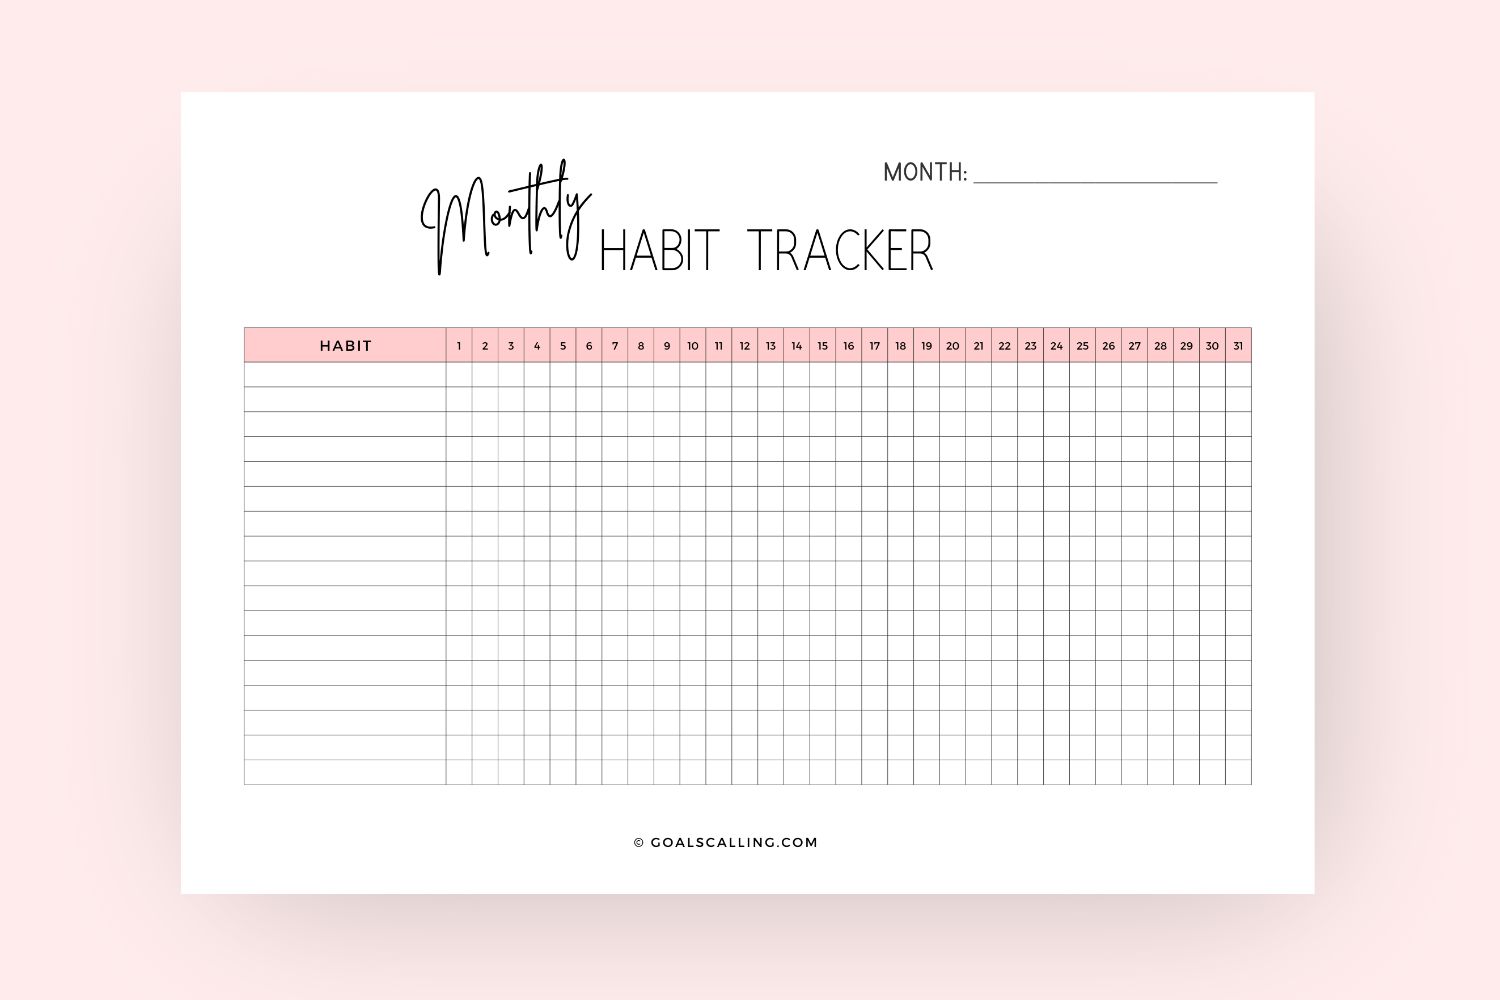 Monthly habit tracker